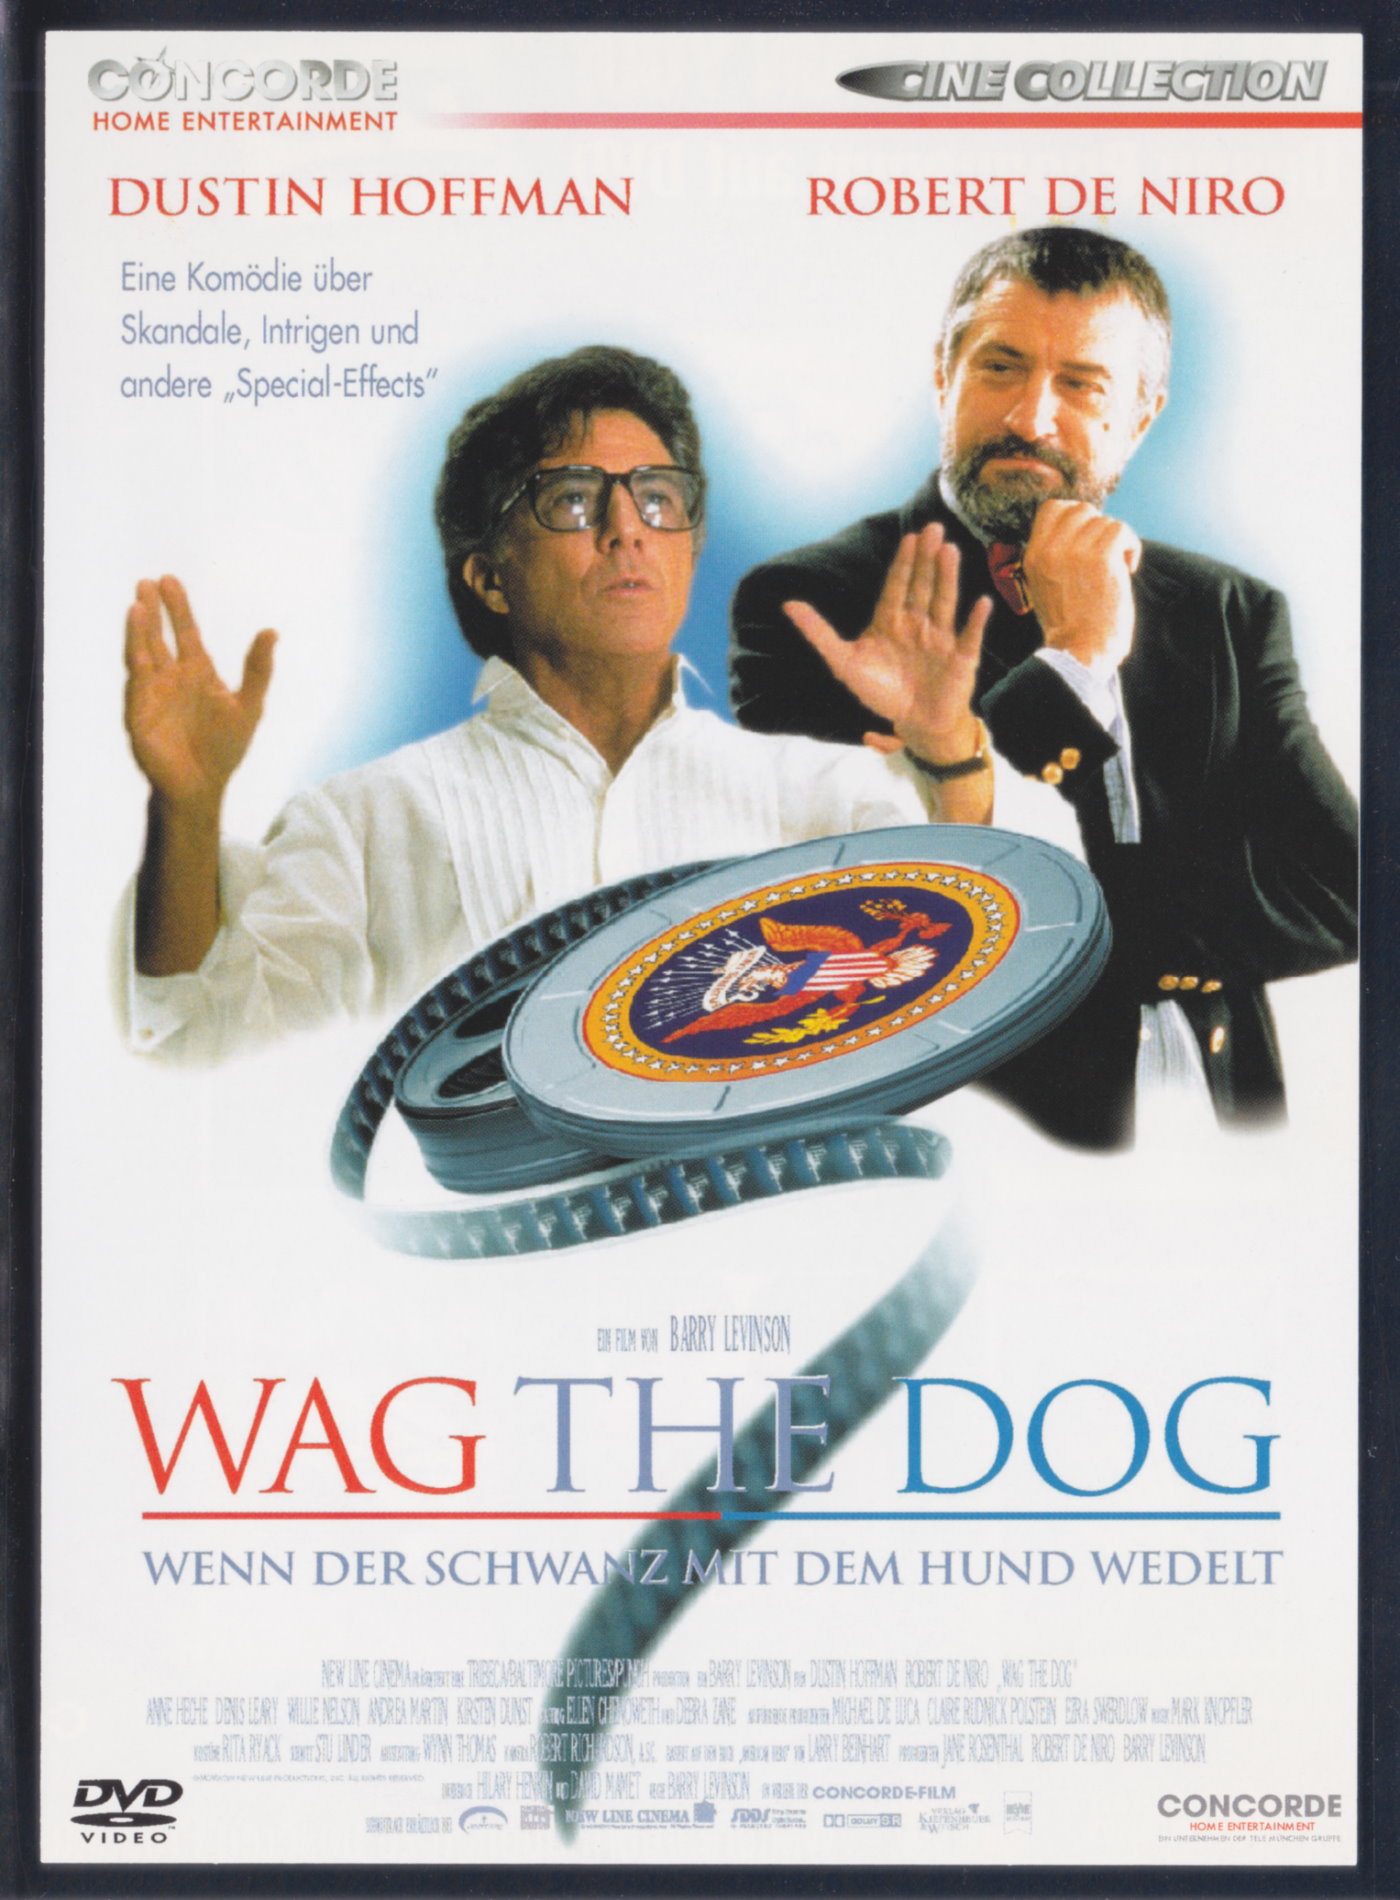 Cover - Wag the Dog - Wenn der Schwanz mit dem Hund wedelt.jpg